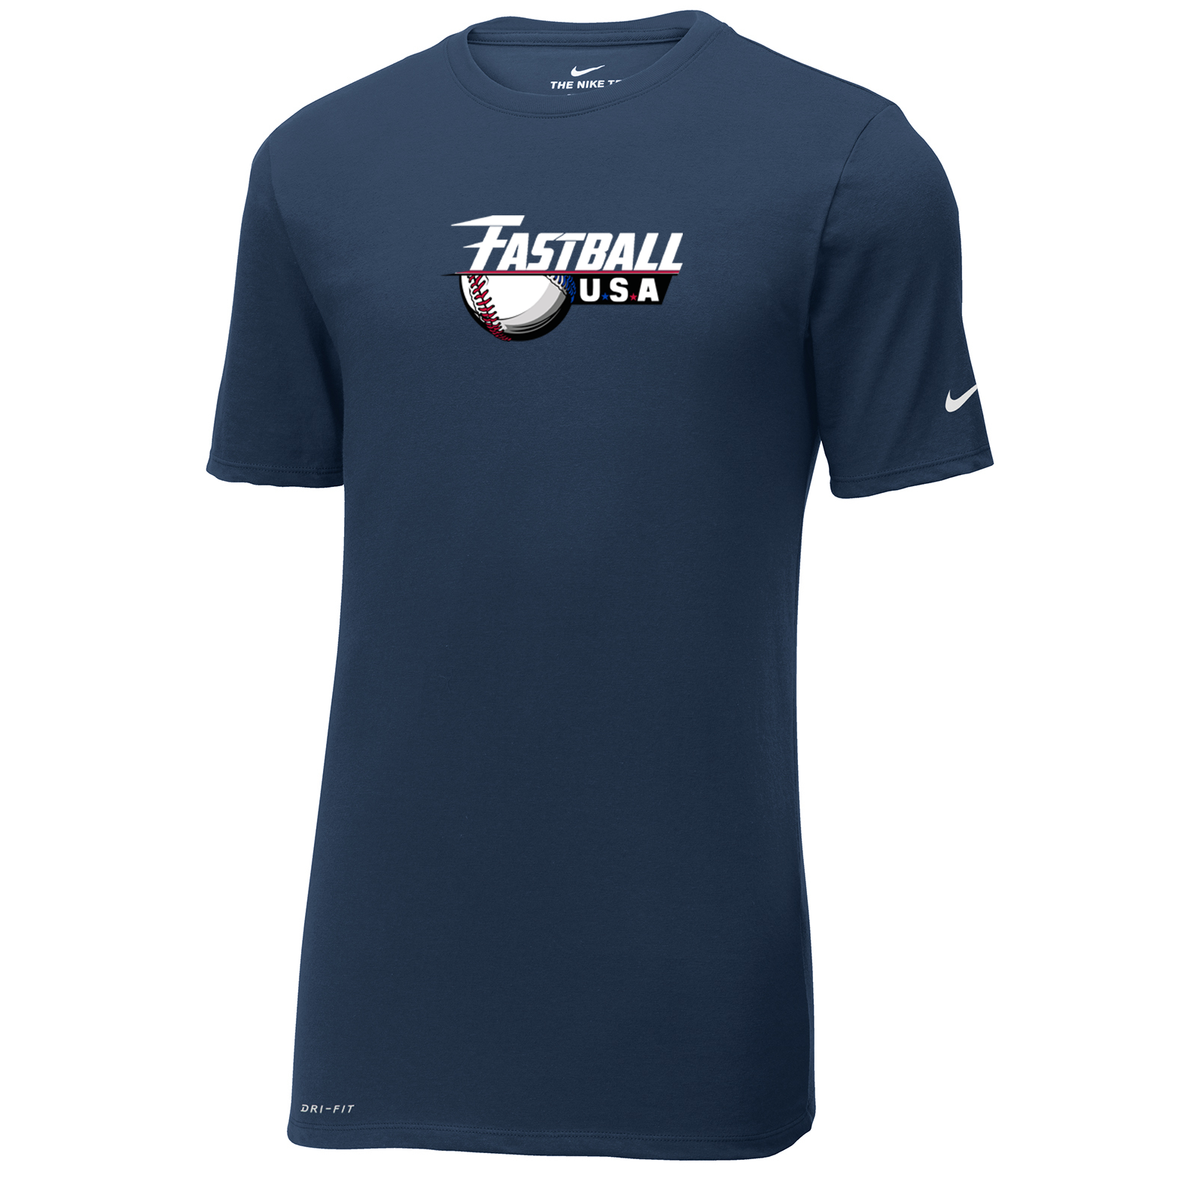 Fastball USA Academy Baseball Nike Dri-FIT Tee